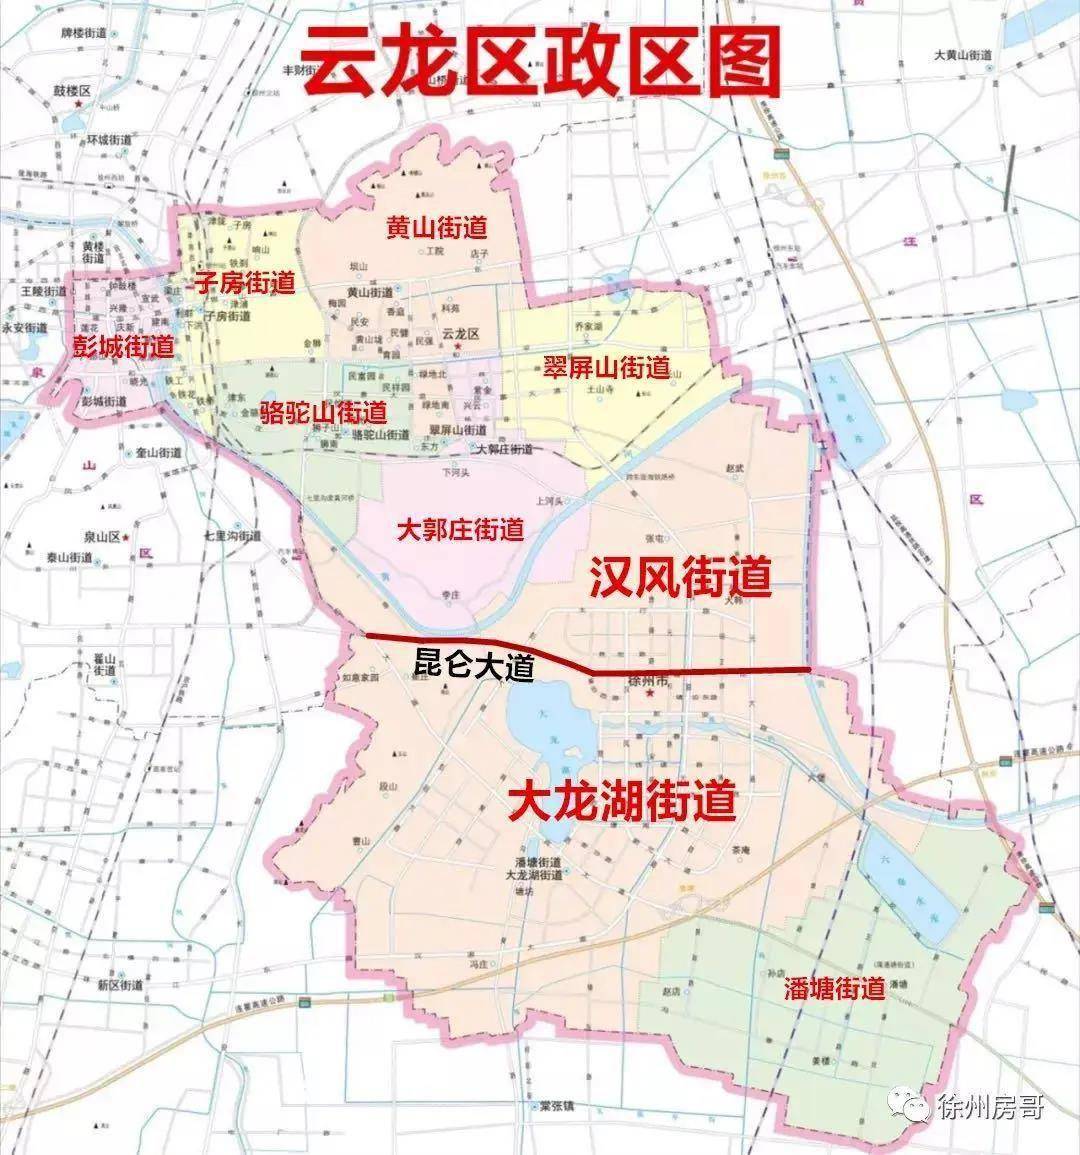 江苏部分地区行政区划调整,徐州的变化是.